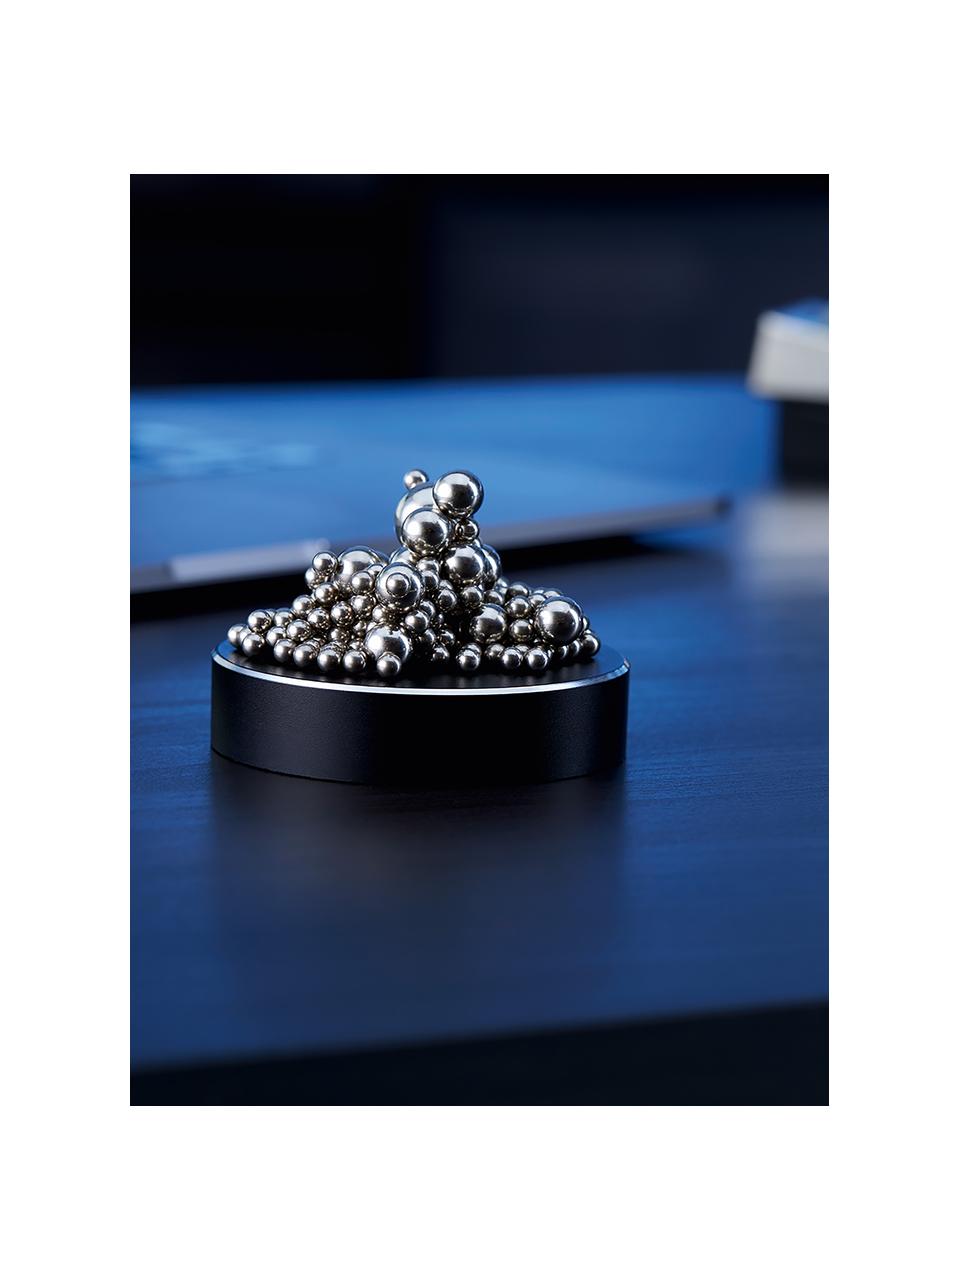 Magnetspiel Malo, Stahl, beschichtet, Silberfarben, Anthrazit, B 9 x H 2 cm